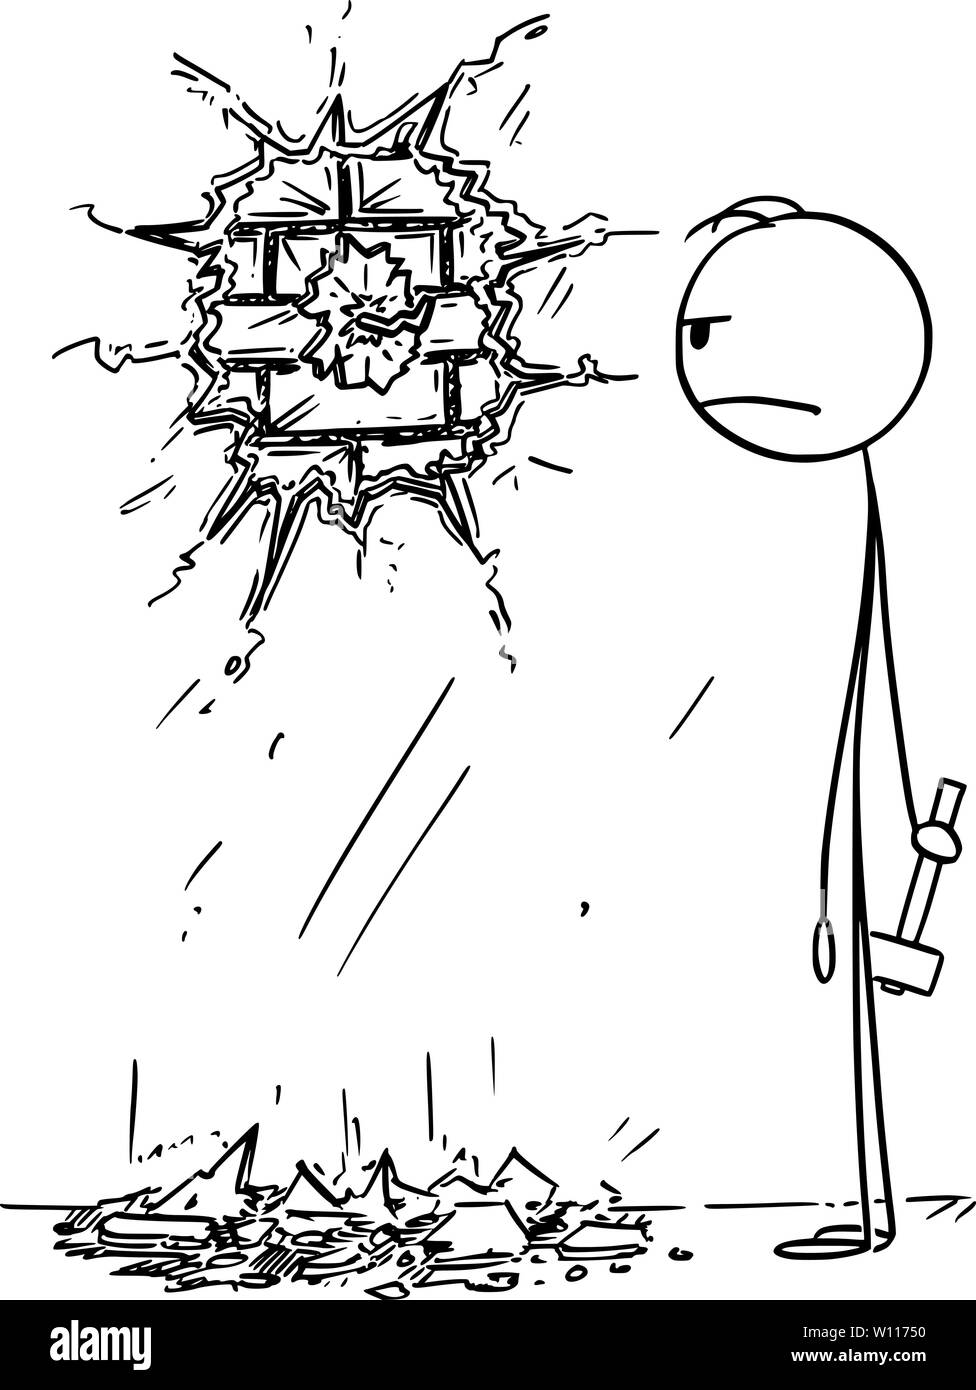 Vector cartoon stick figura disegno illustrazione concettuale del goffo angry man, che ha distrutto il muro o intonaco mentre ha provato a martello o battere un chiodo o gancio a muro. Illustrazione Vettoriale